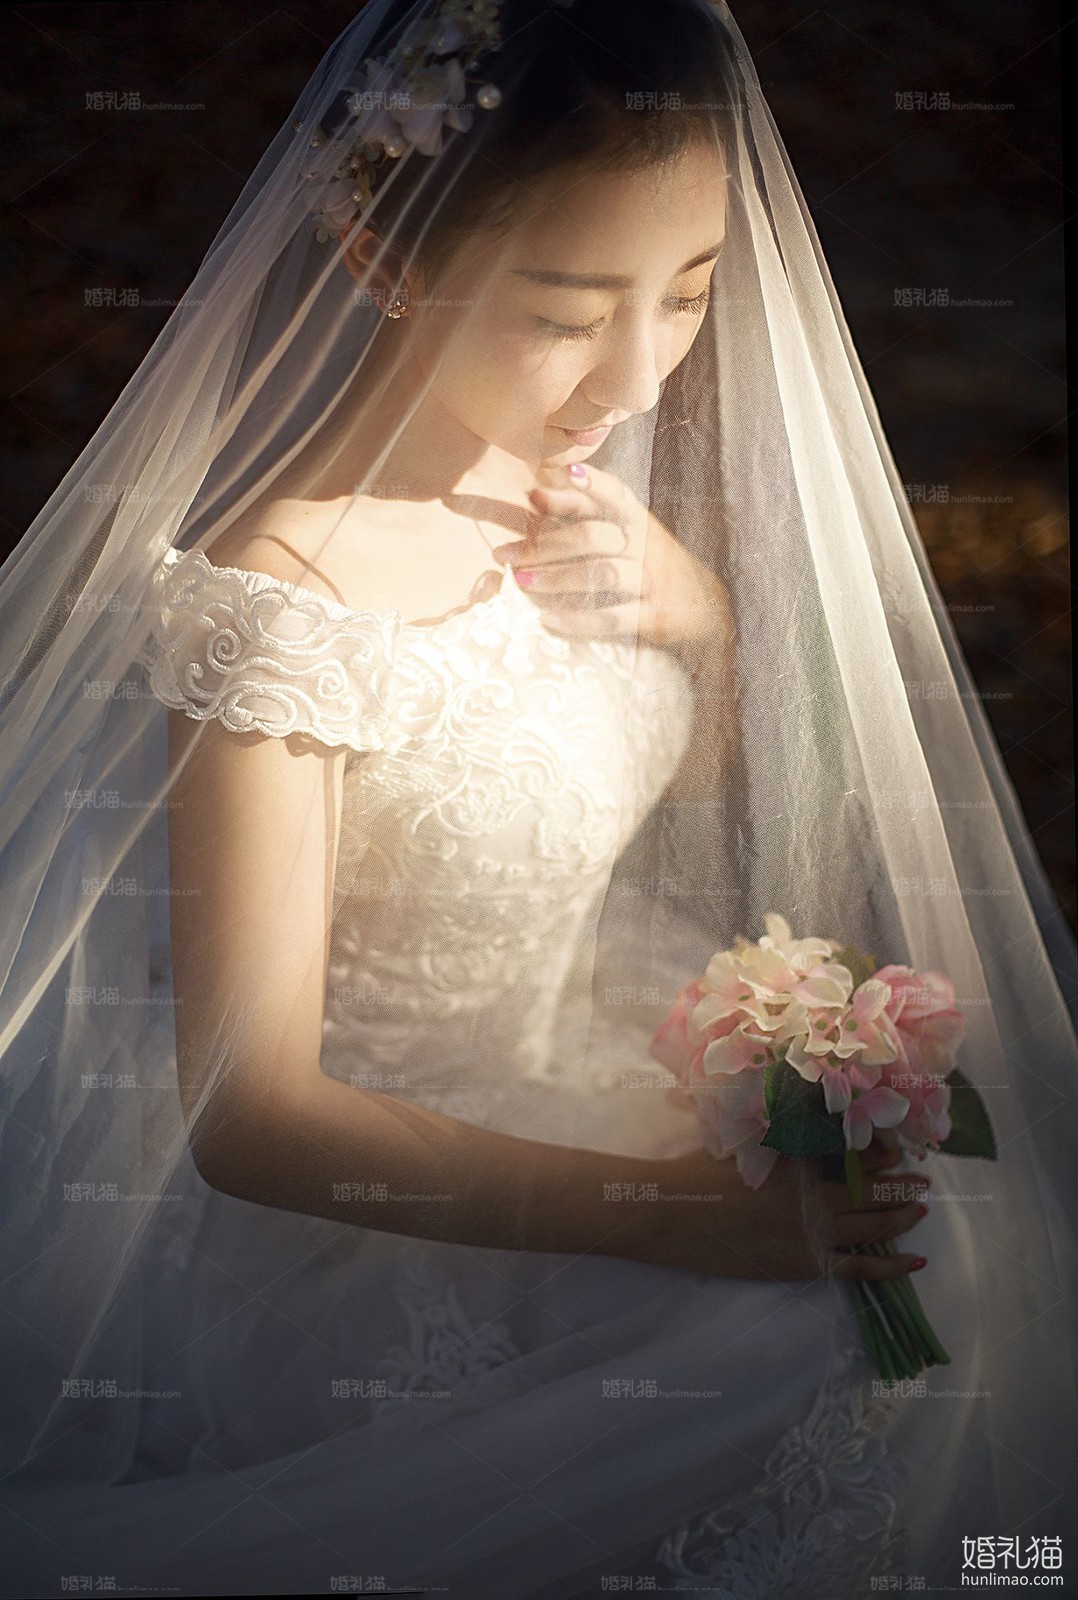 2017年12月深圳婚纱摄影,,深圳婚纱照,婚纱照图片